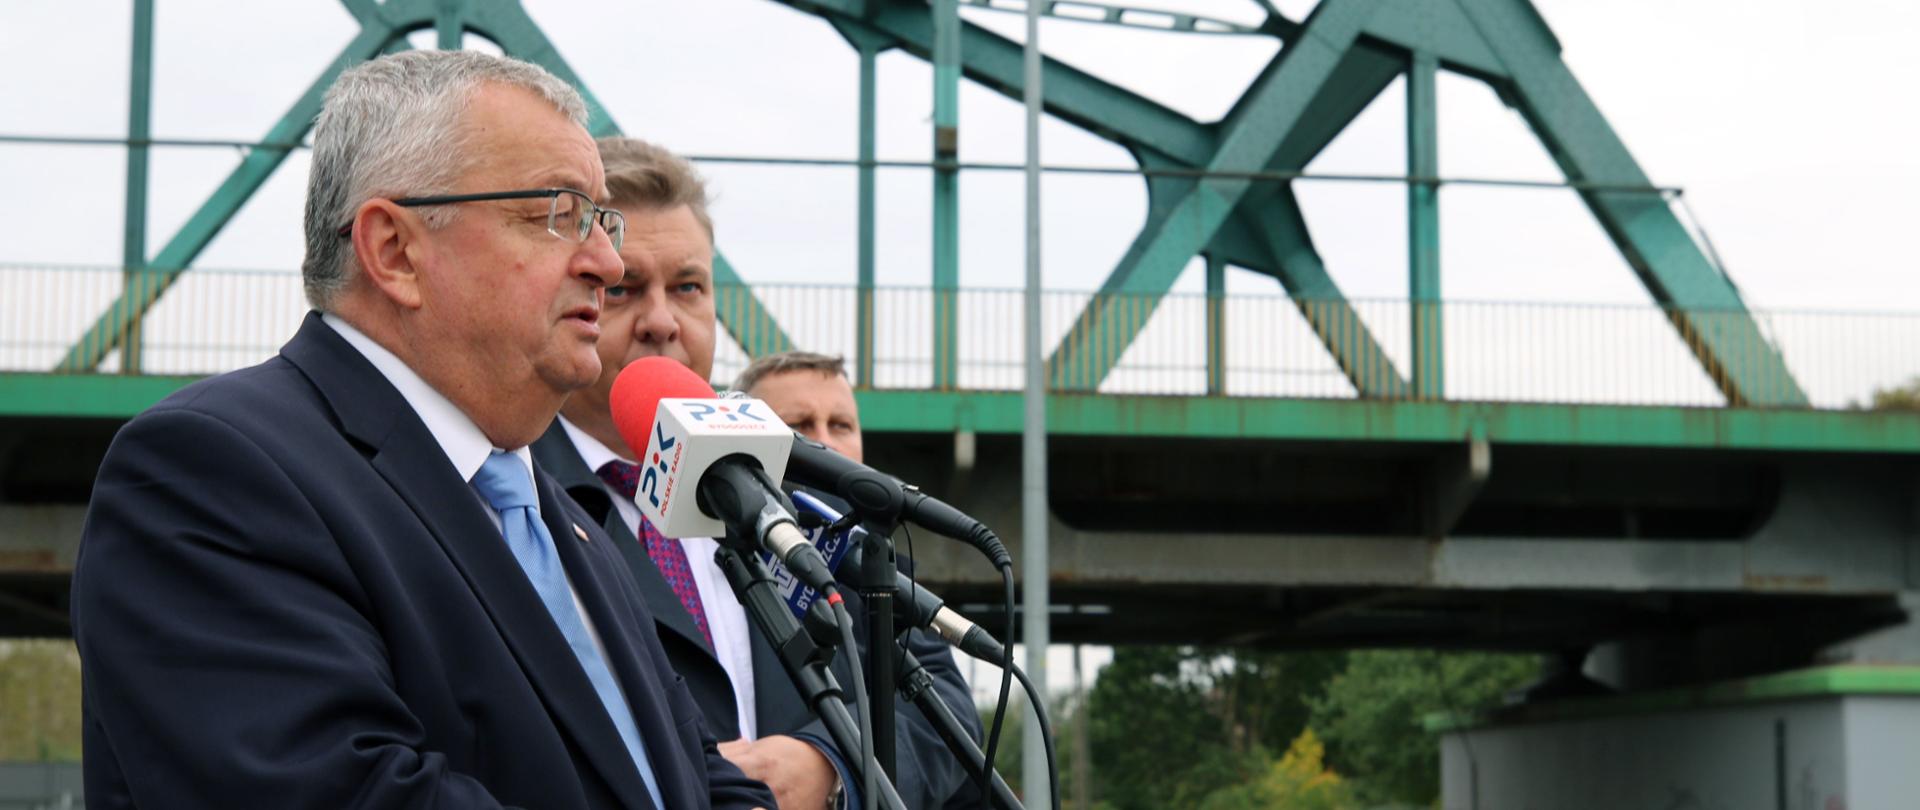 Konferencja prasowa dotycząca mostu kolejowo-drogowego na rzece Wiśle w Bydgoszczy z udziałem ministra infrastruktury Andrzeja Adamczyka